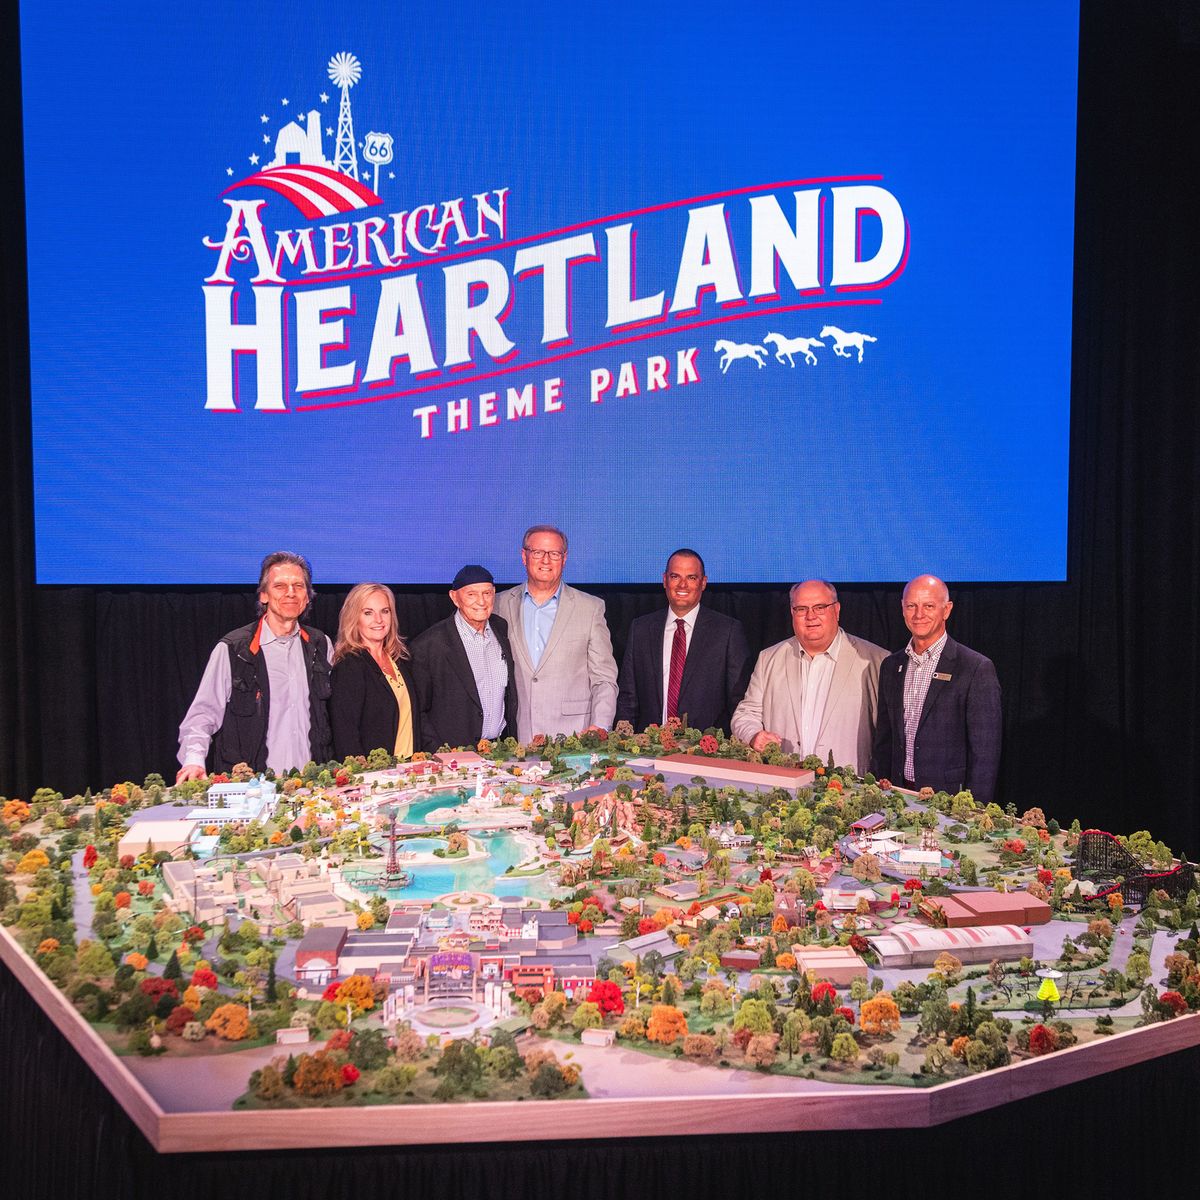 American Heartland Theme Park
hatalmas élménypark, usa, 2026-ra készül el.
látványtervek, Facebook,